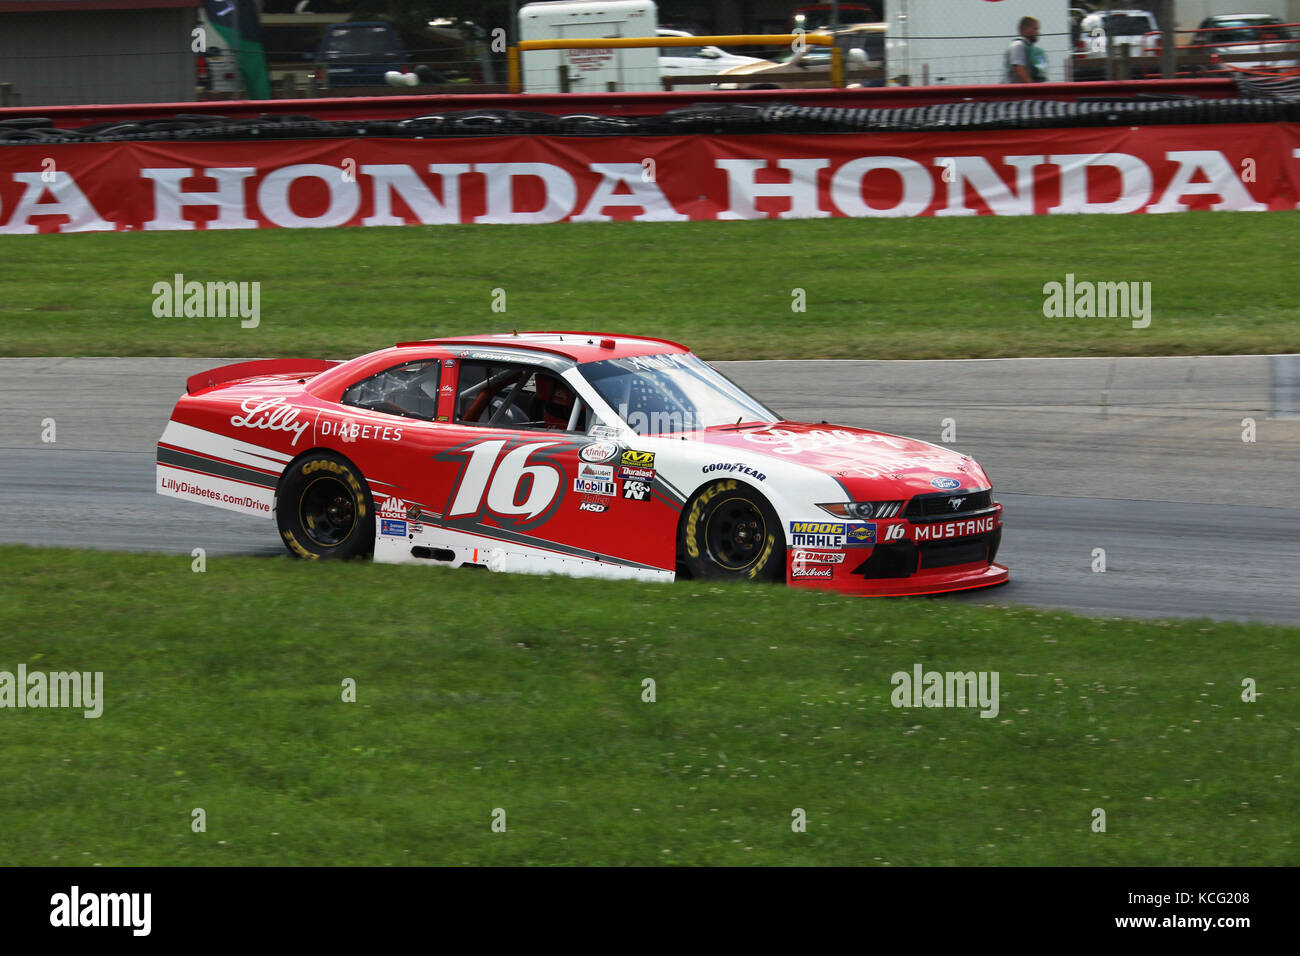 Ryan Reed. Car 16. NASCAR XFINITY Qualifying session